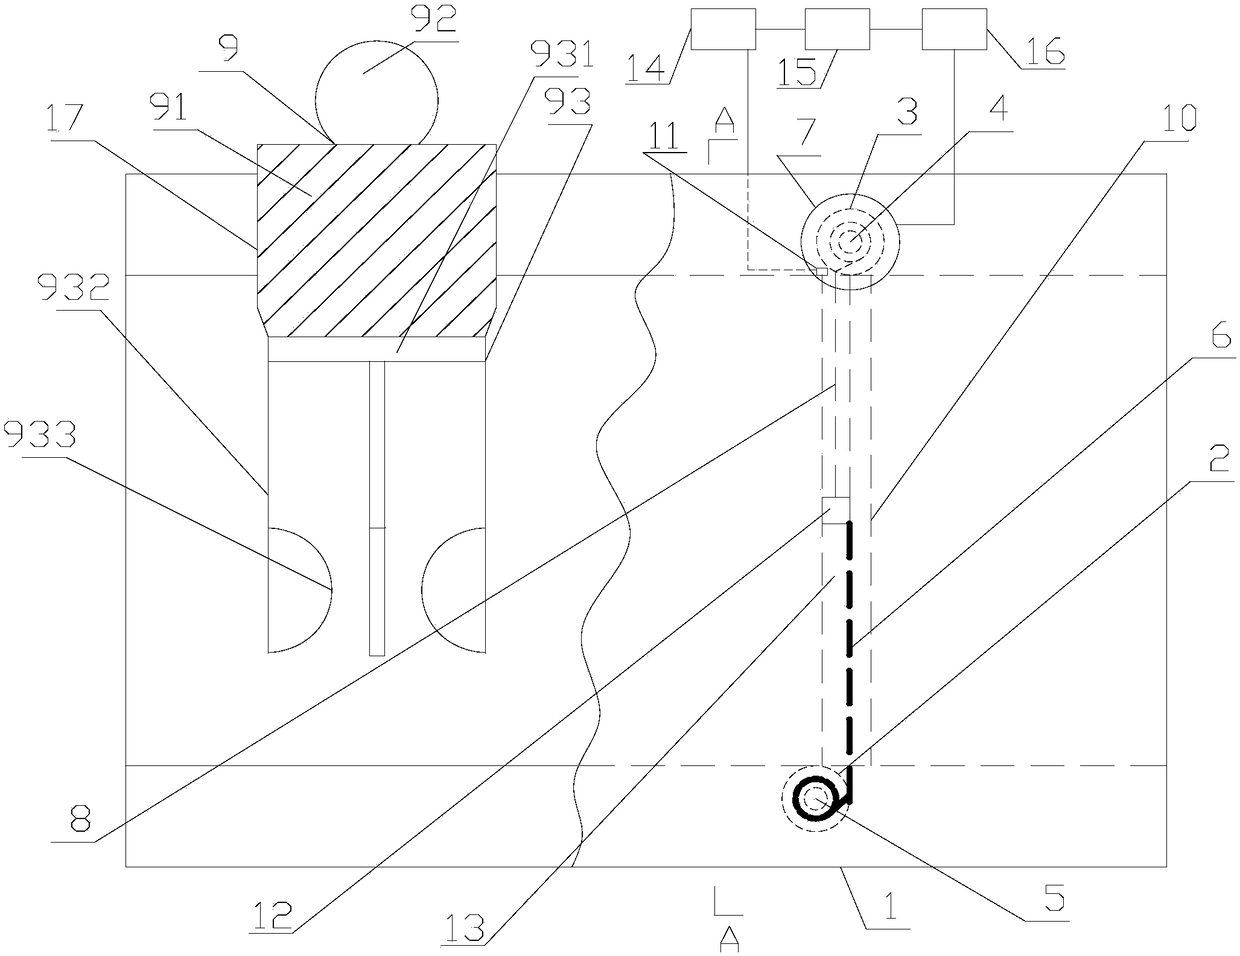 Automatic roller shutter valve mechanism